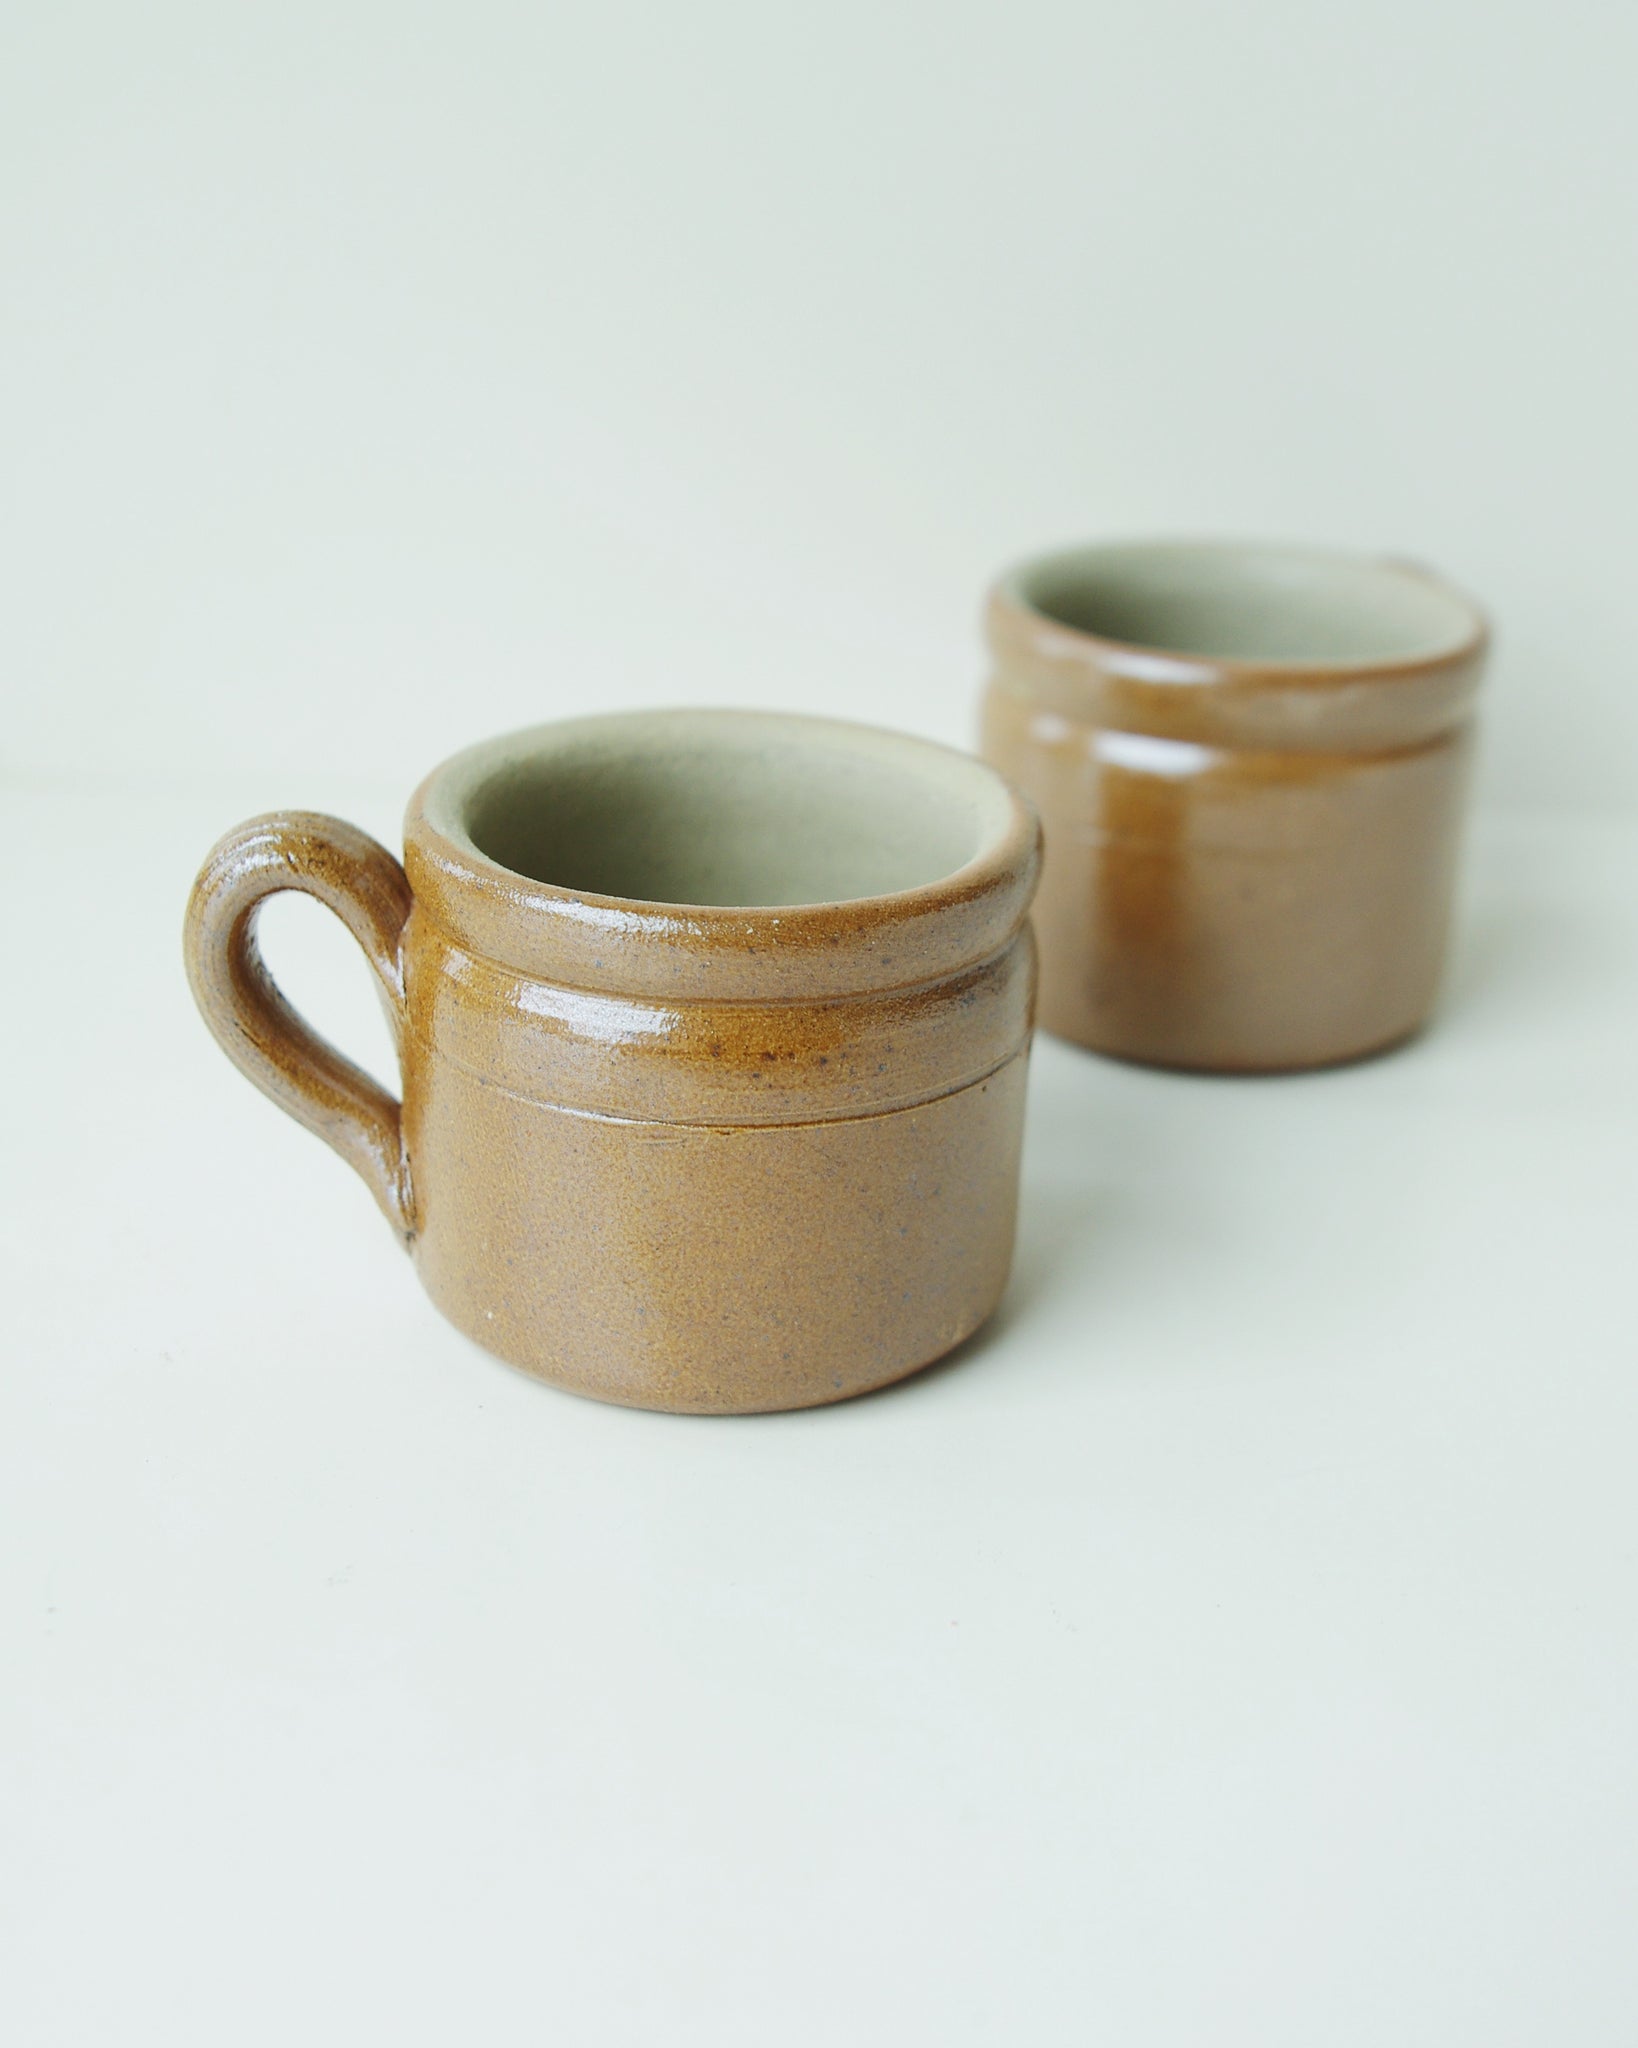 Two brown ceramic mugs.